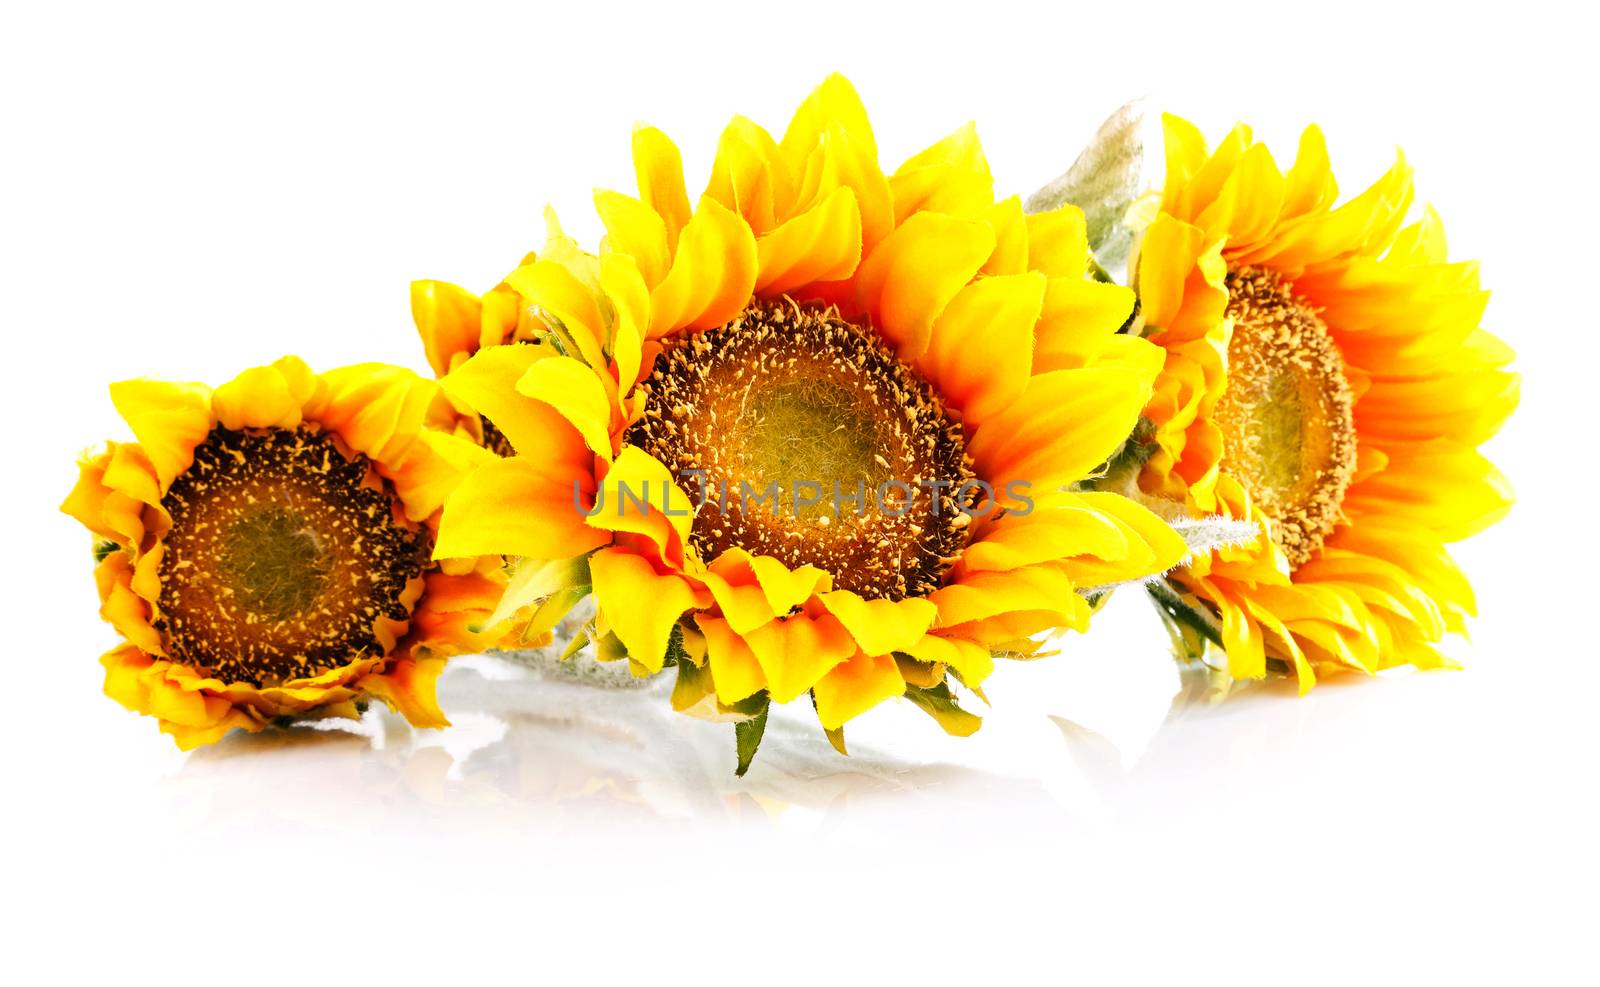 sunflowers by serkucher